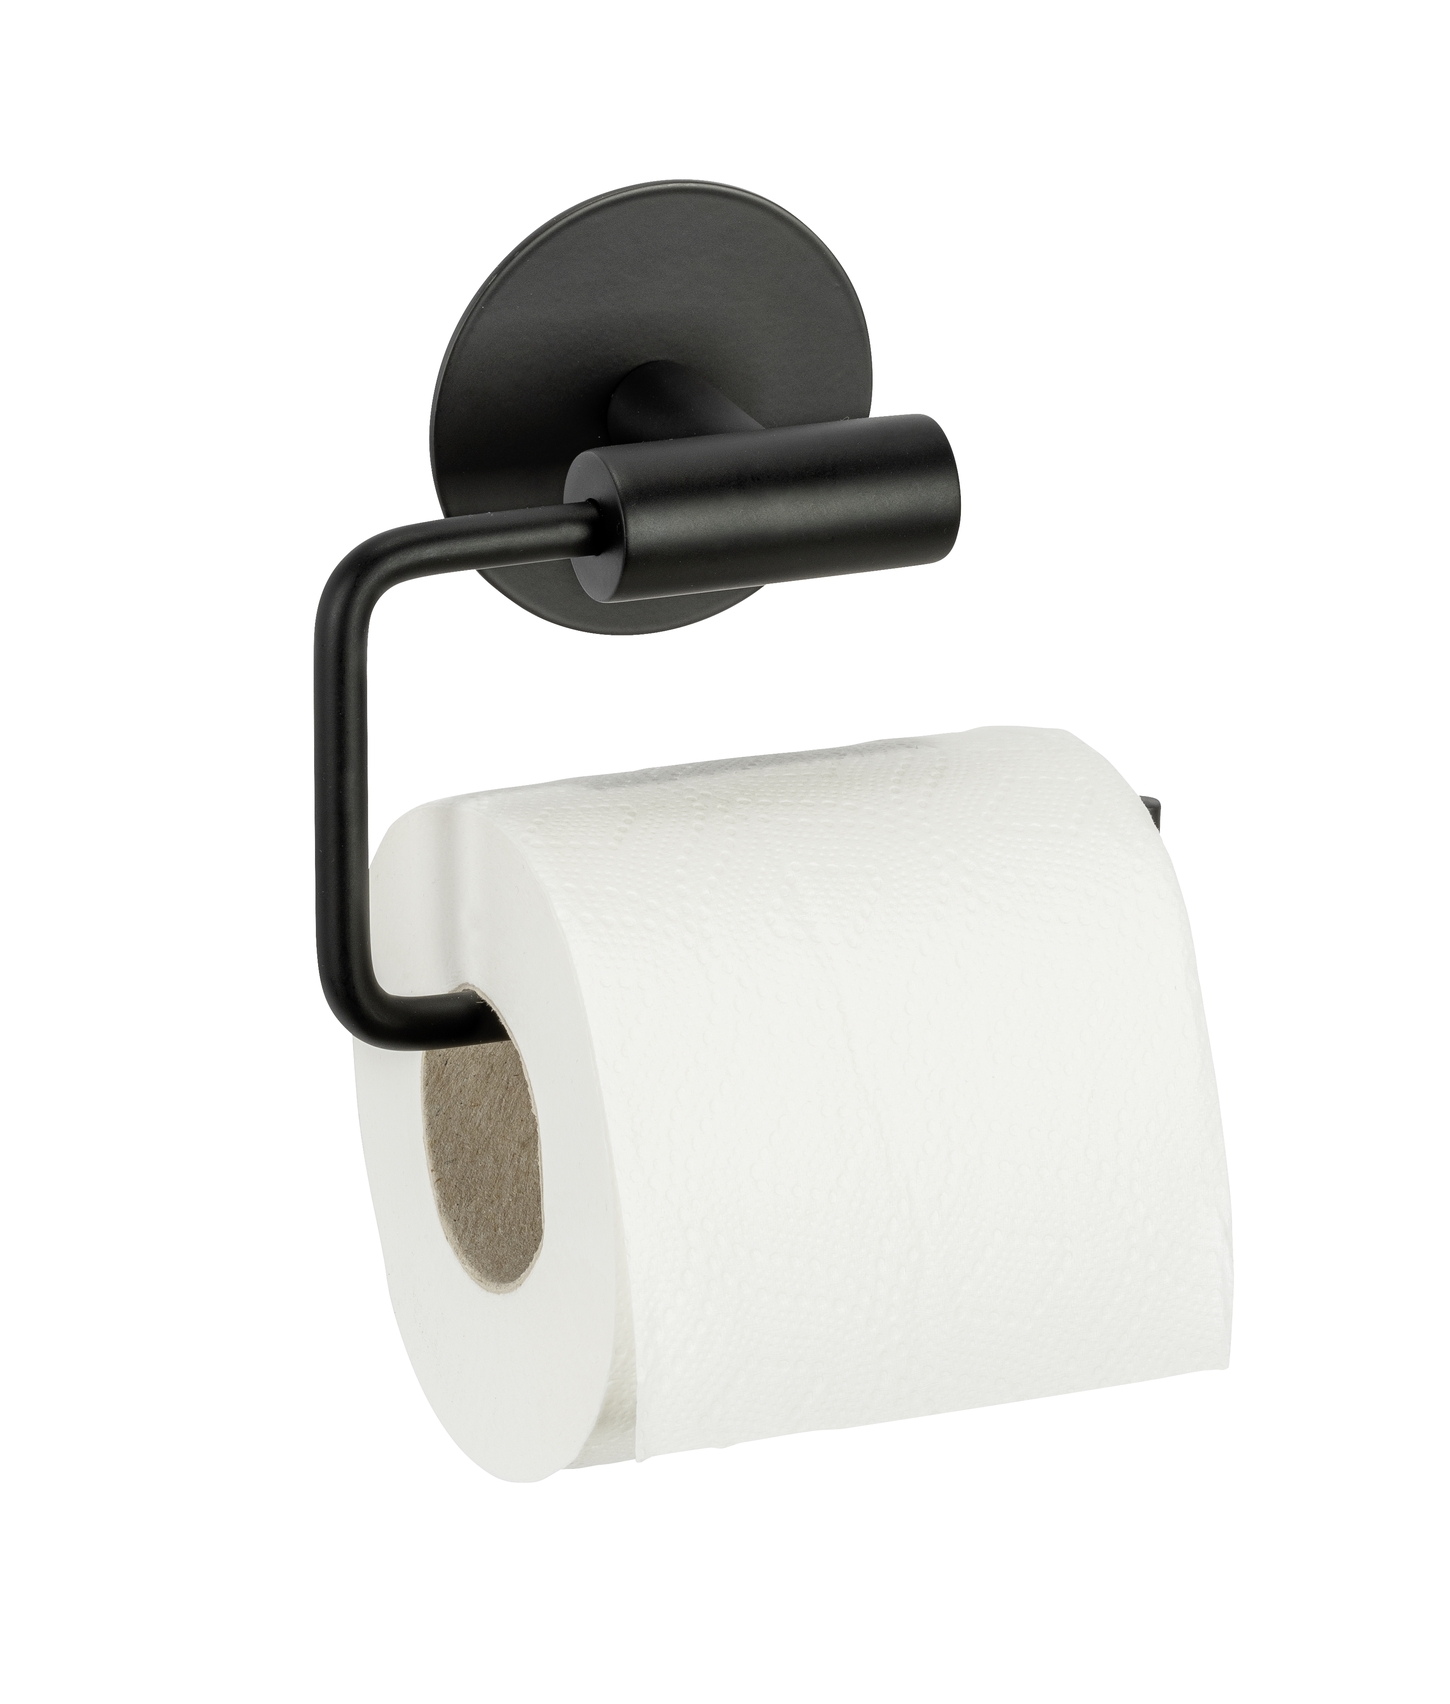 Schöner Wohnen Toilettenpapierhalter Meleto, schwarz